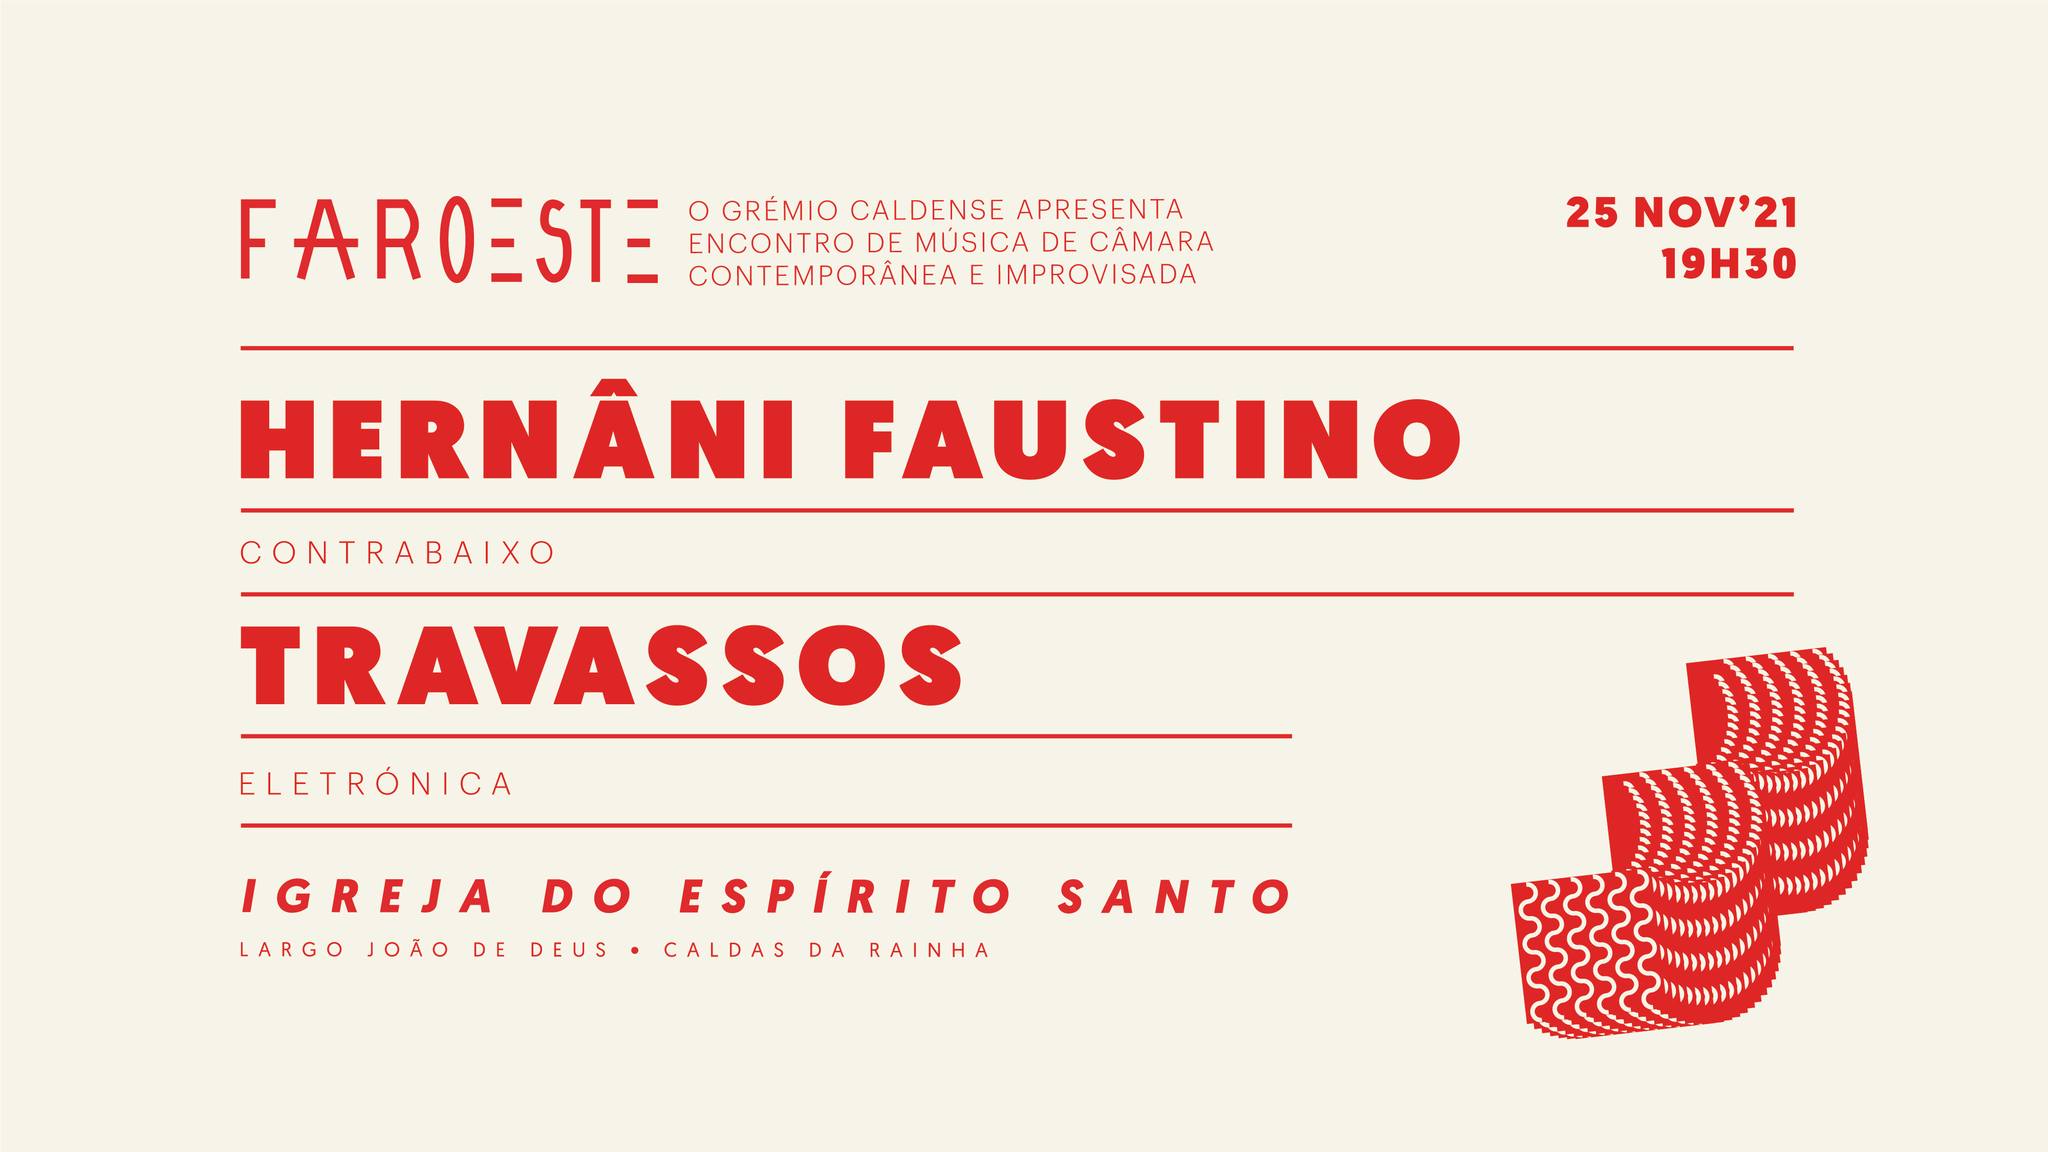 FAROESTE EMCCI: Hernâni Faustino // Travassos